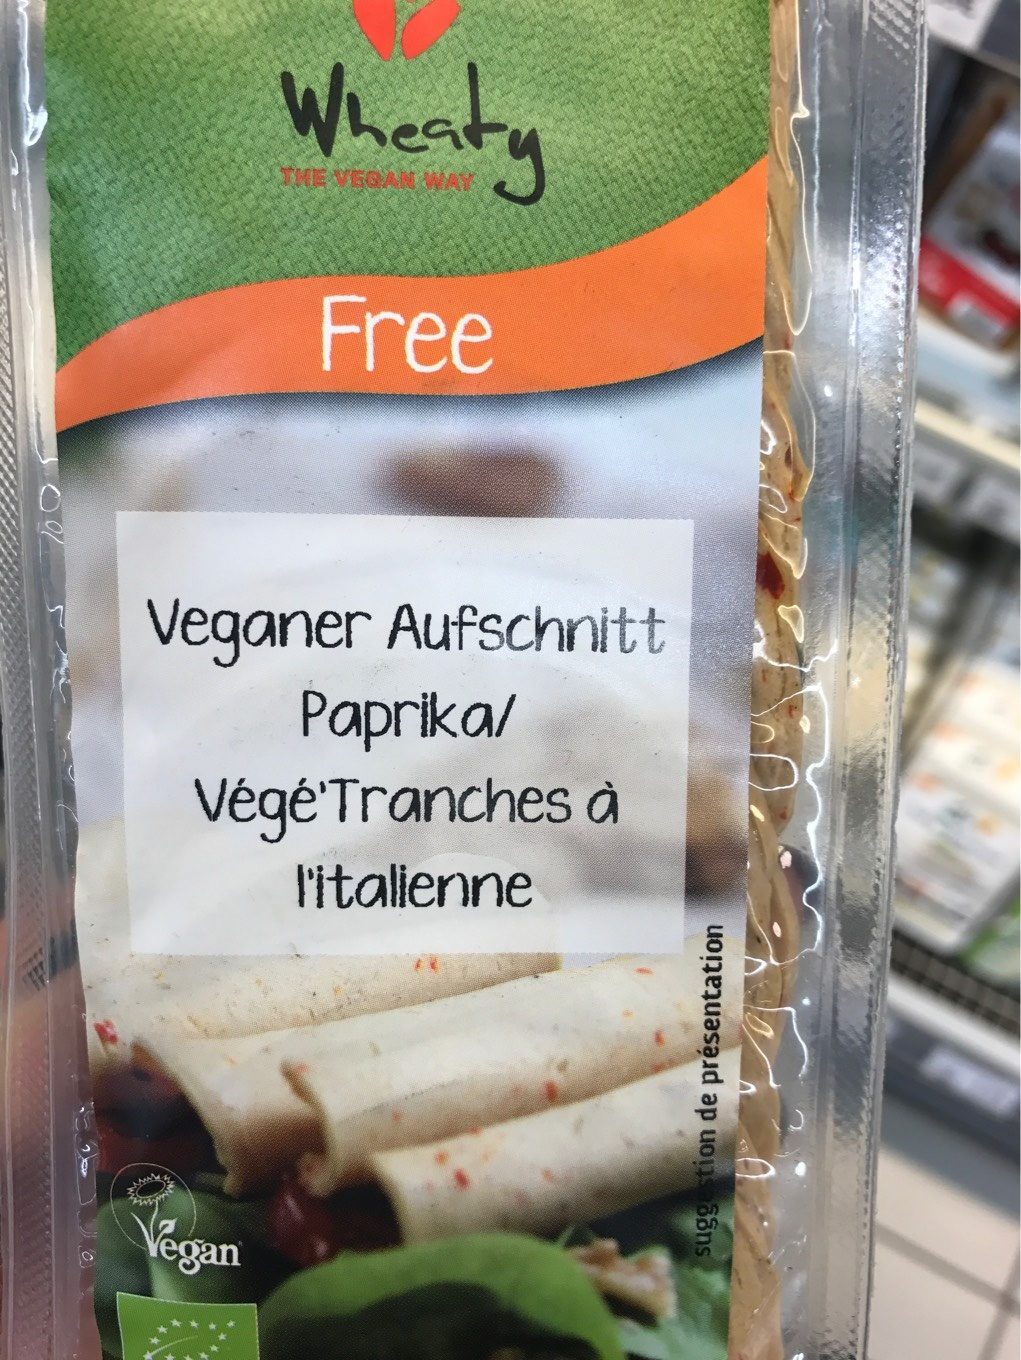 Veganer Aufschnitt Paprika - Produkt - fr